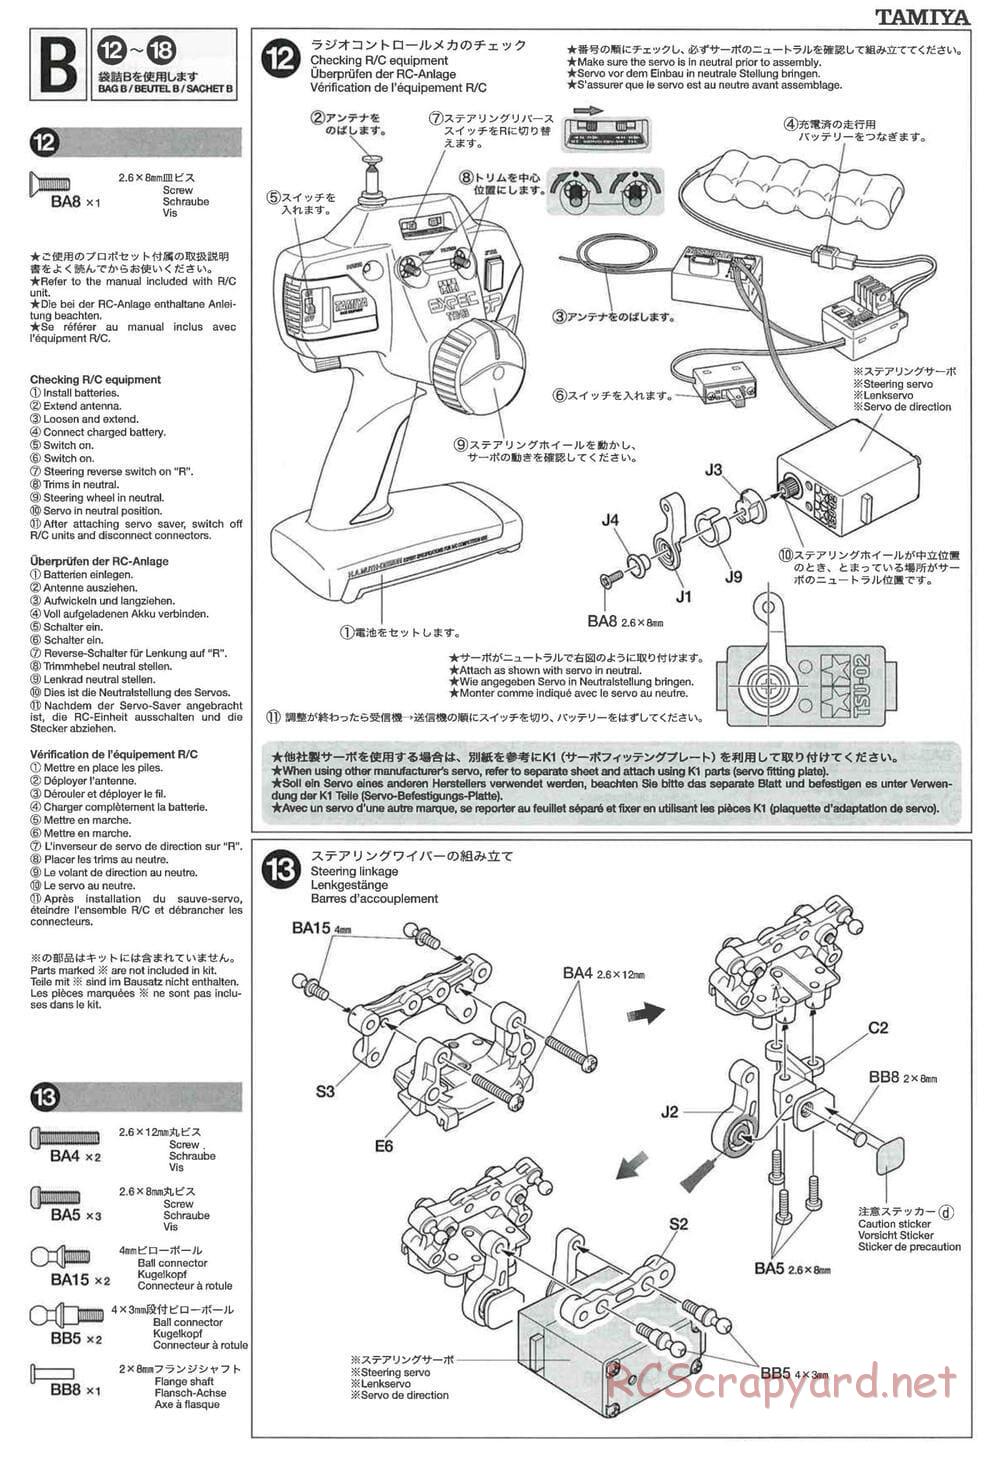 Tamiya - GT-01 Chassis - Manual - Page 9